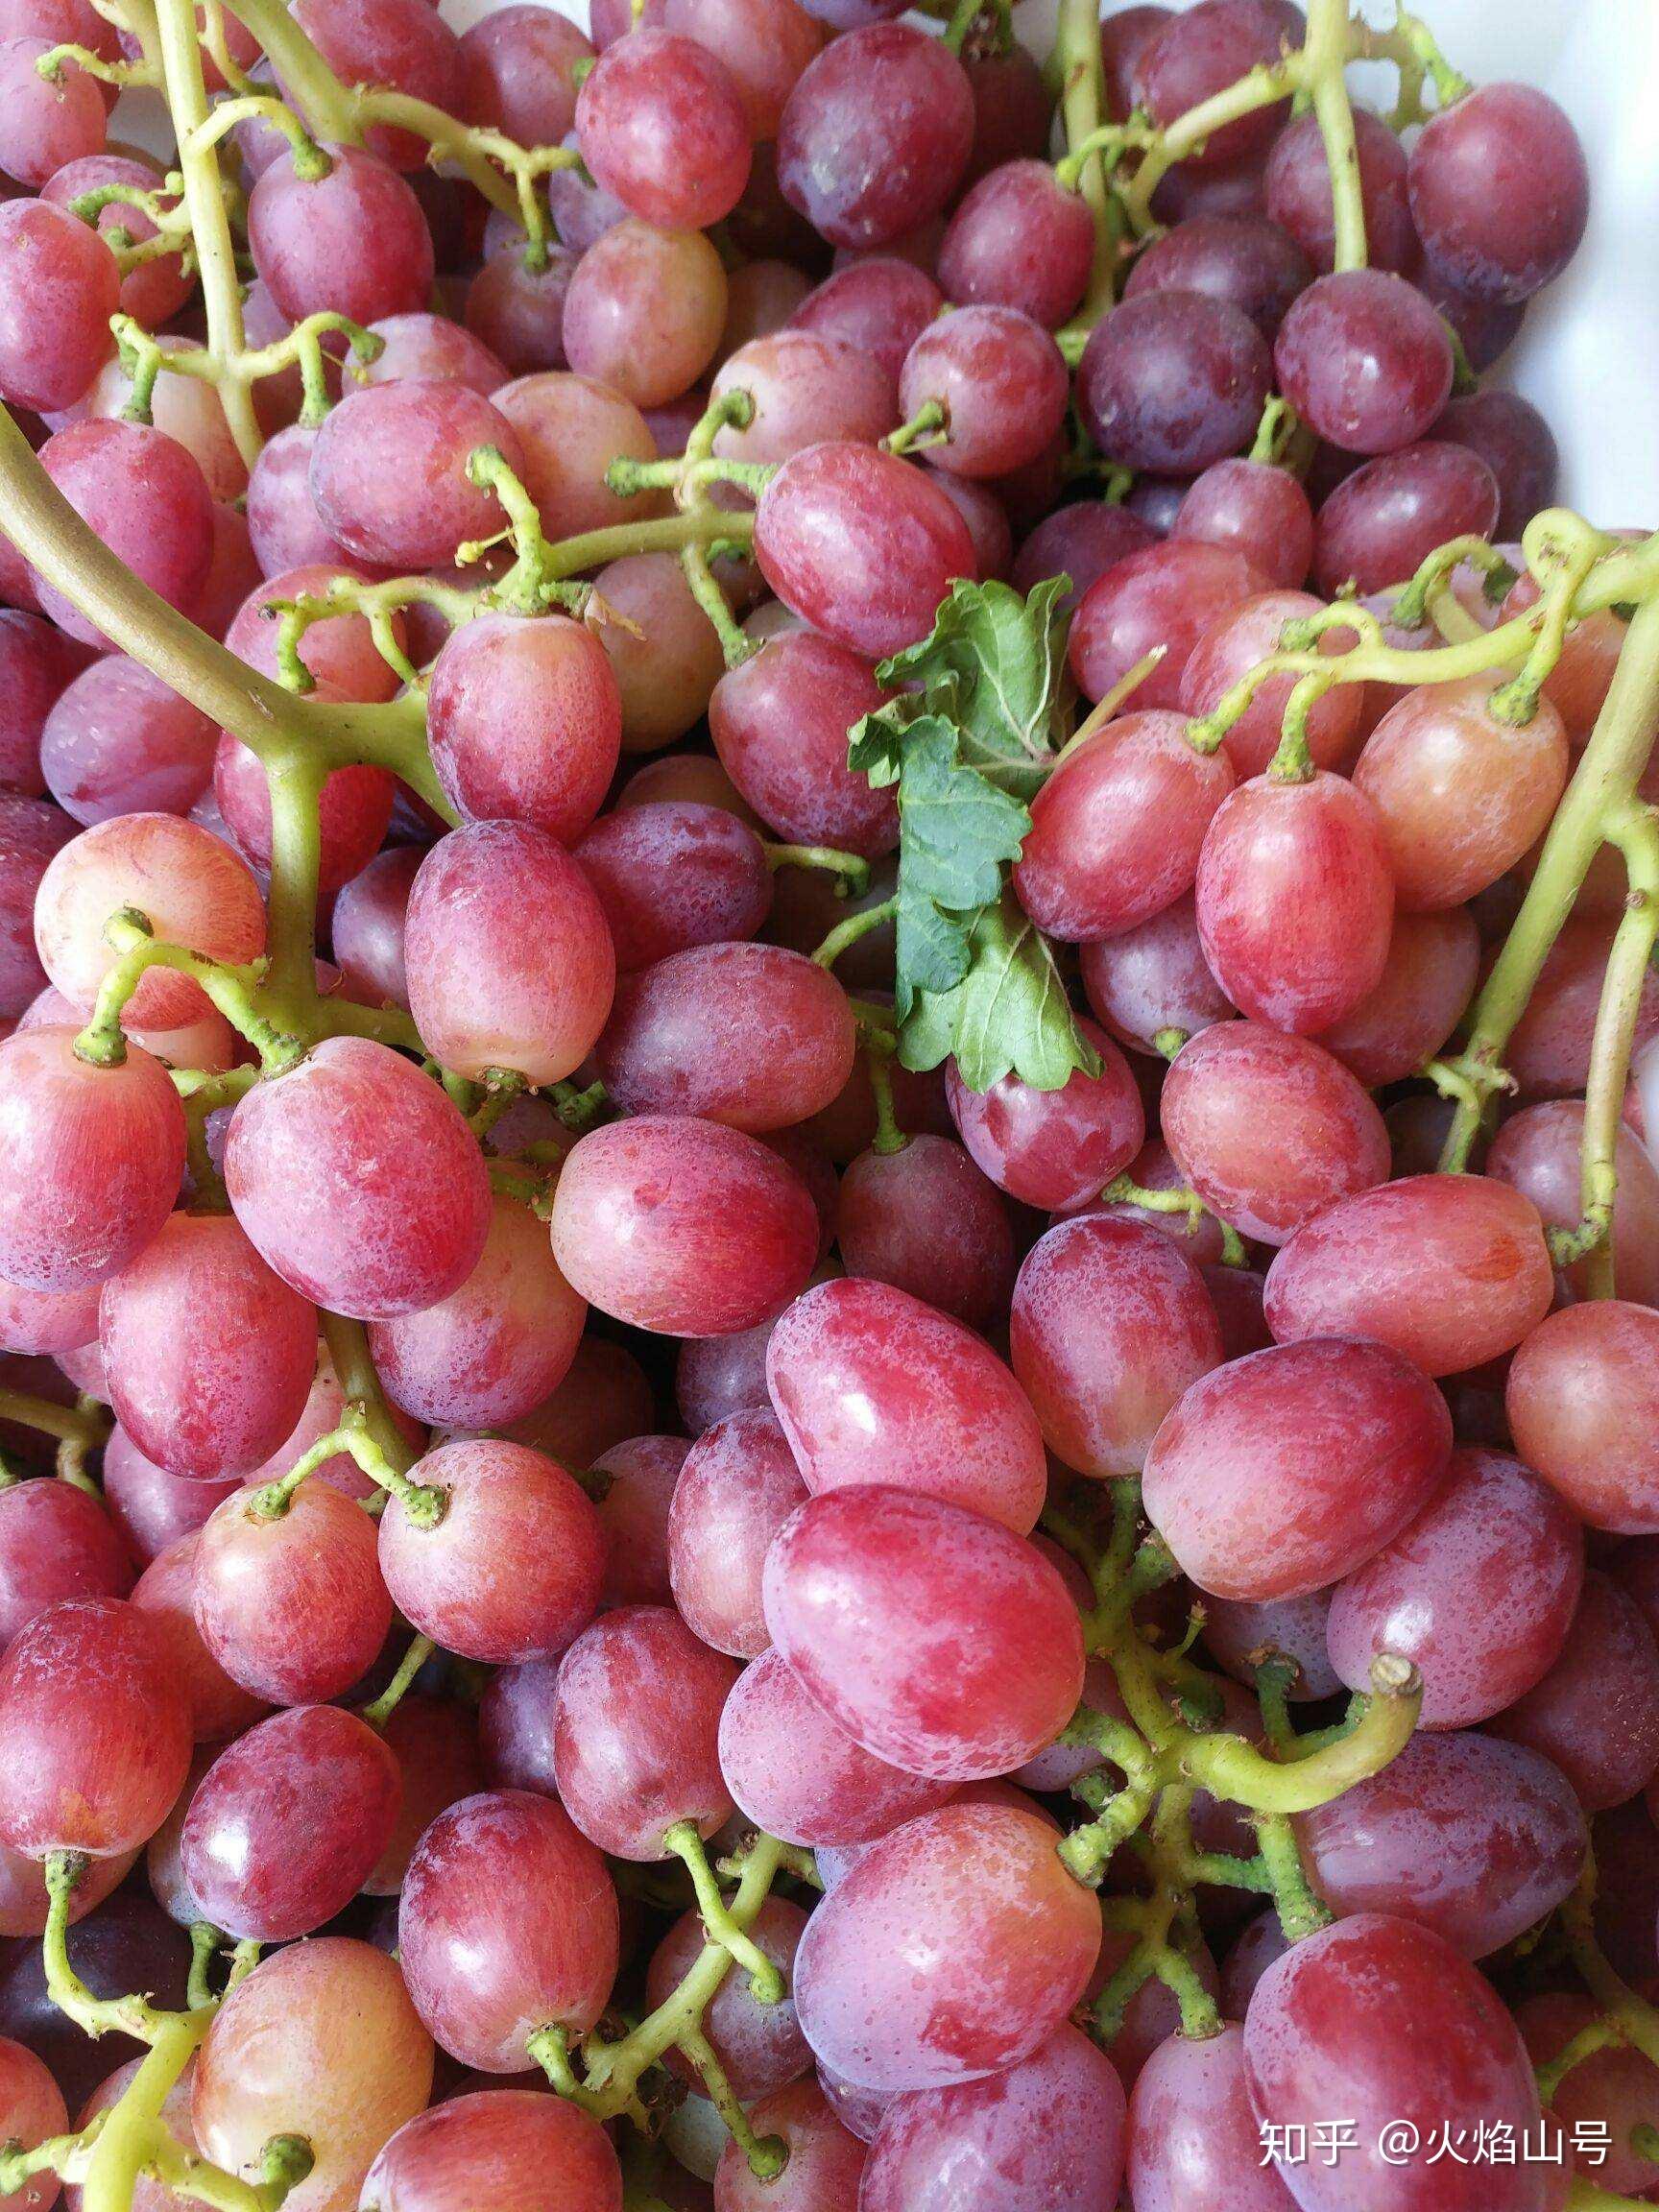 红巴拉多葡萄是有籽葡萄,属于早熟品种,而且其耐储存,好运输的特点